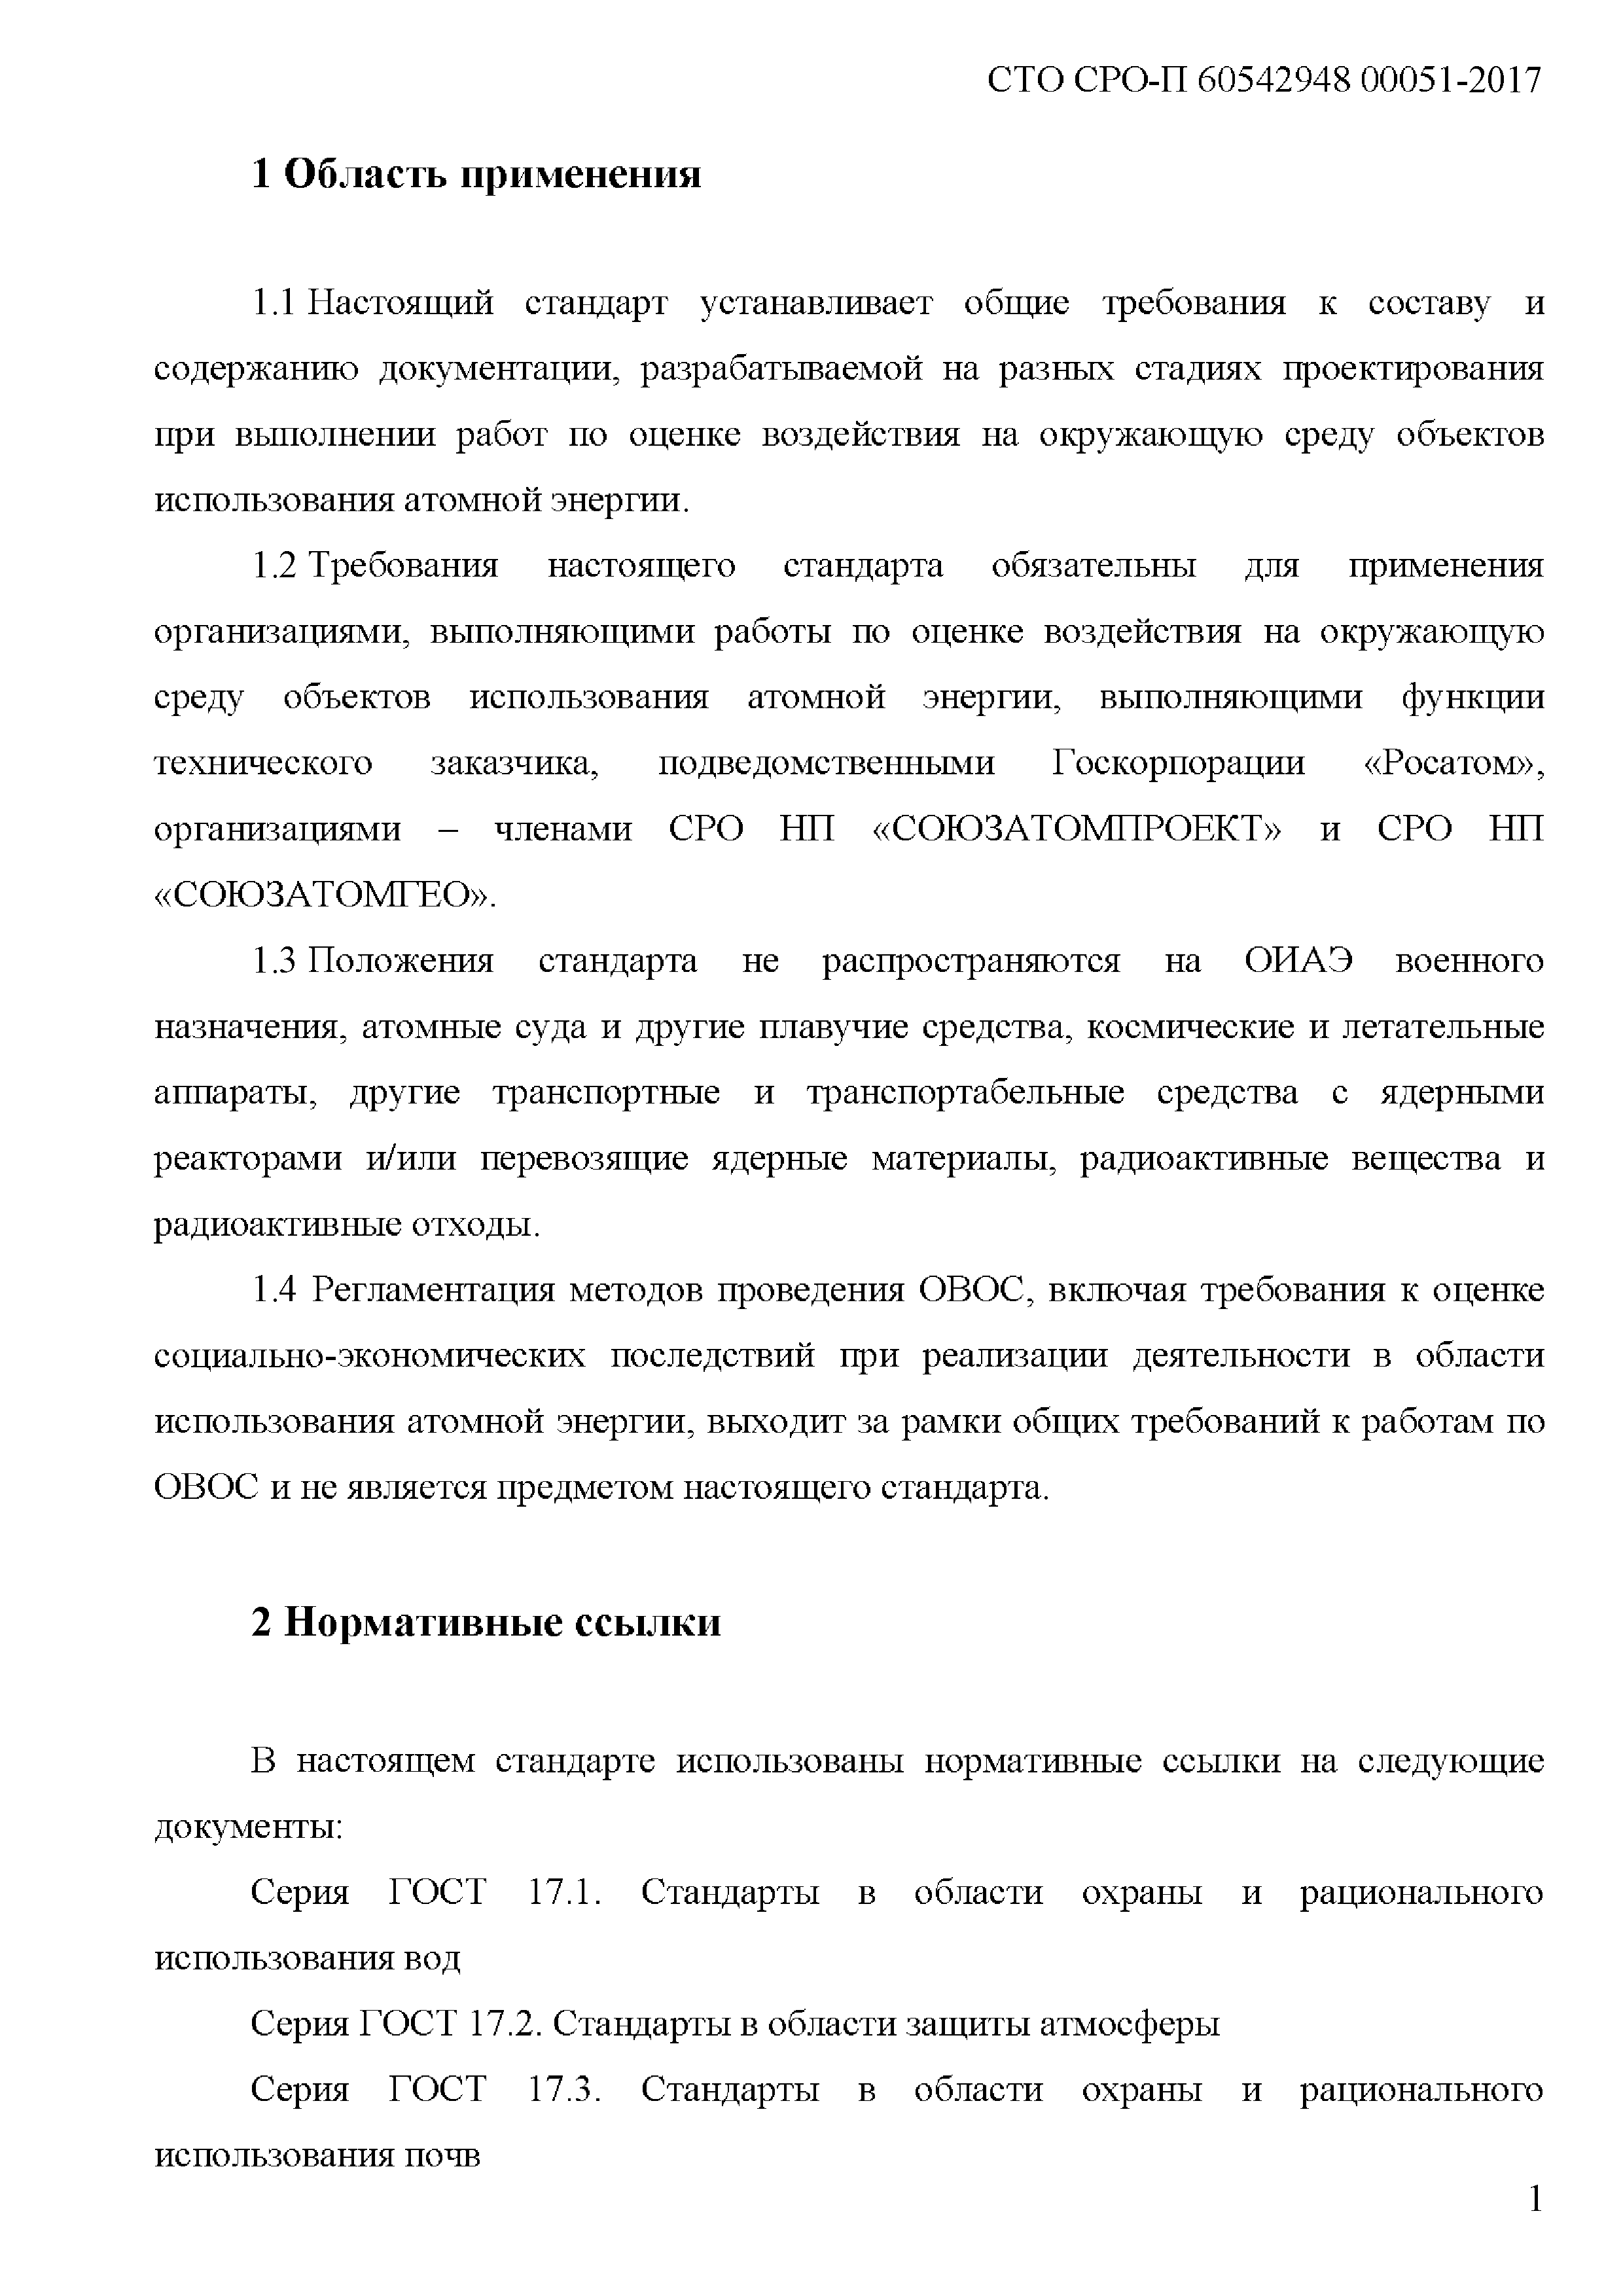 СТО СРО-П 60542948 00051-2017